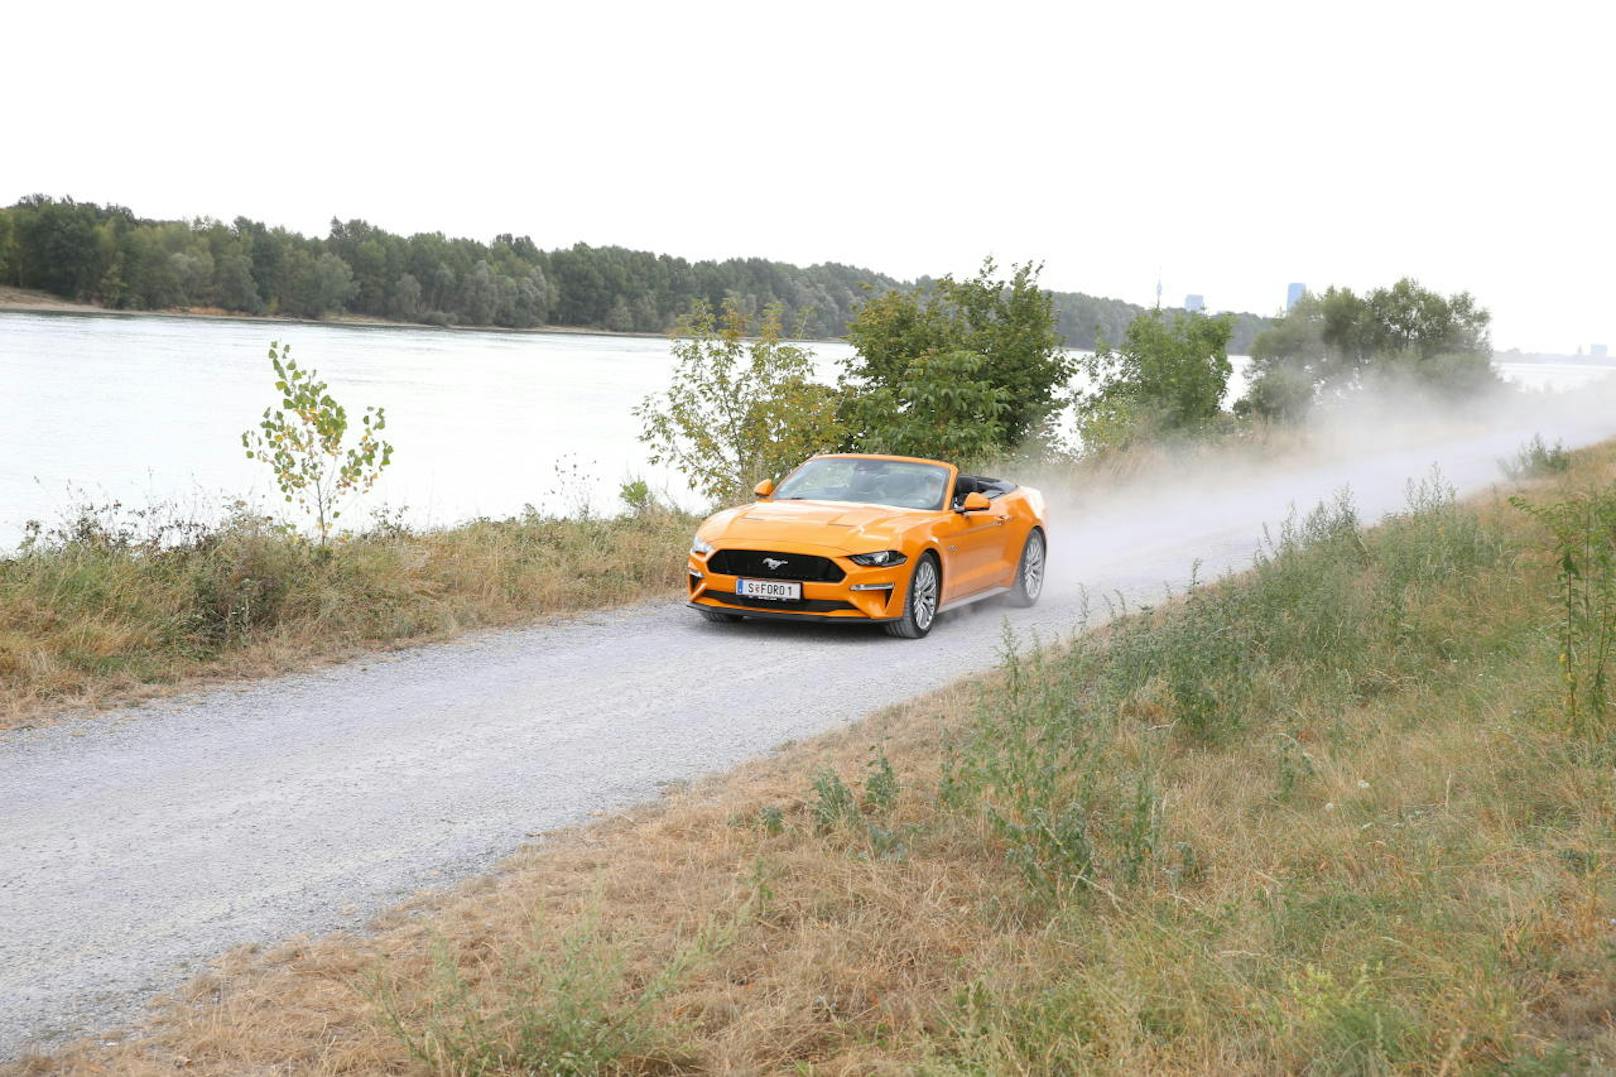 Das wichtigste ist ja der Fahrspaß, und davon gibt es beim Mustang GT reichlich.